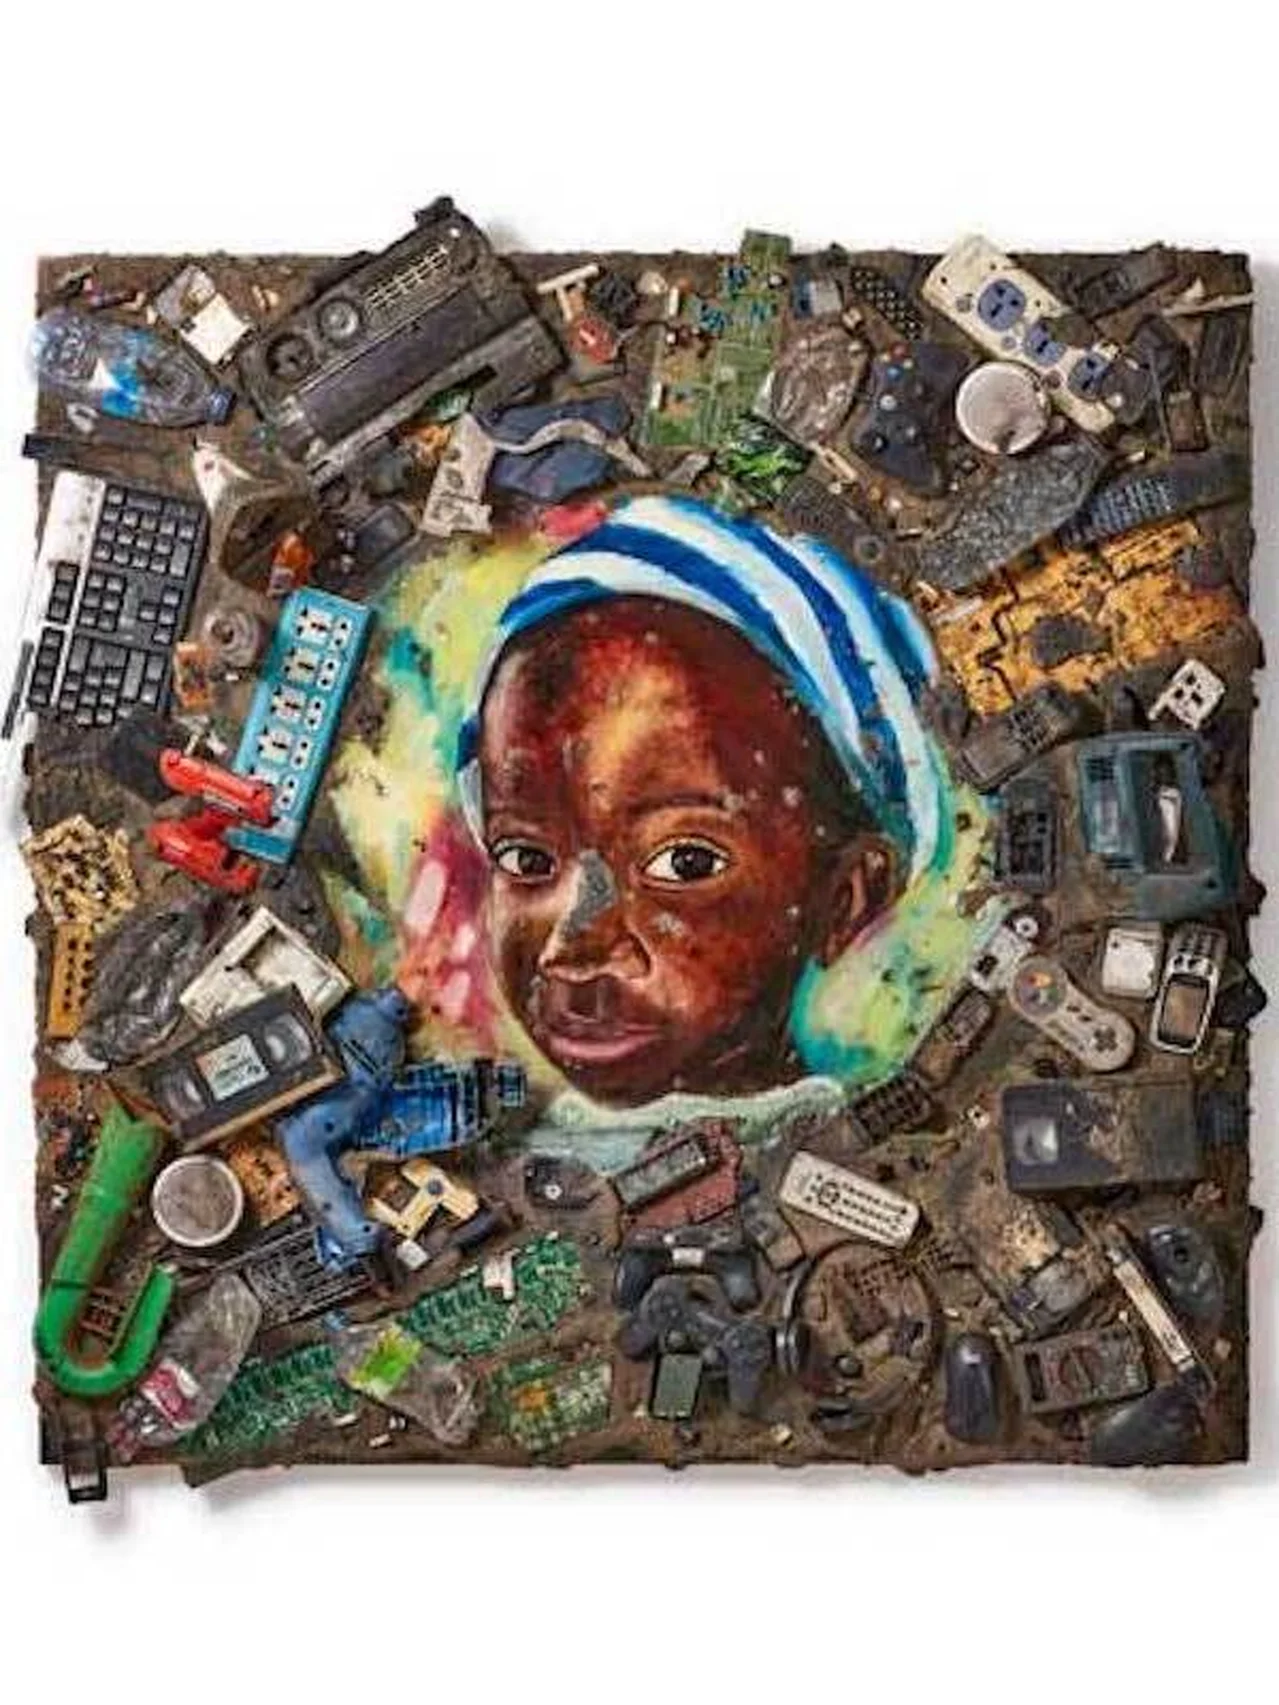 ガーナのスラム街を廃棄物アートで変える。長坂真護による初の美術館での個展が上野の森美術館にて開催中